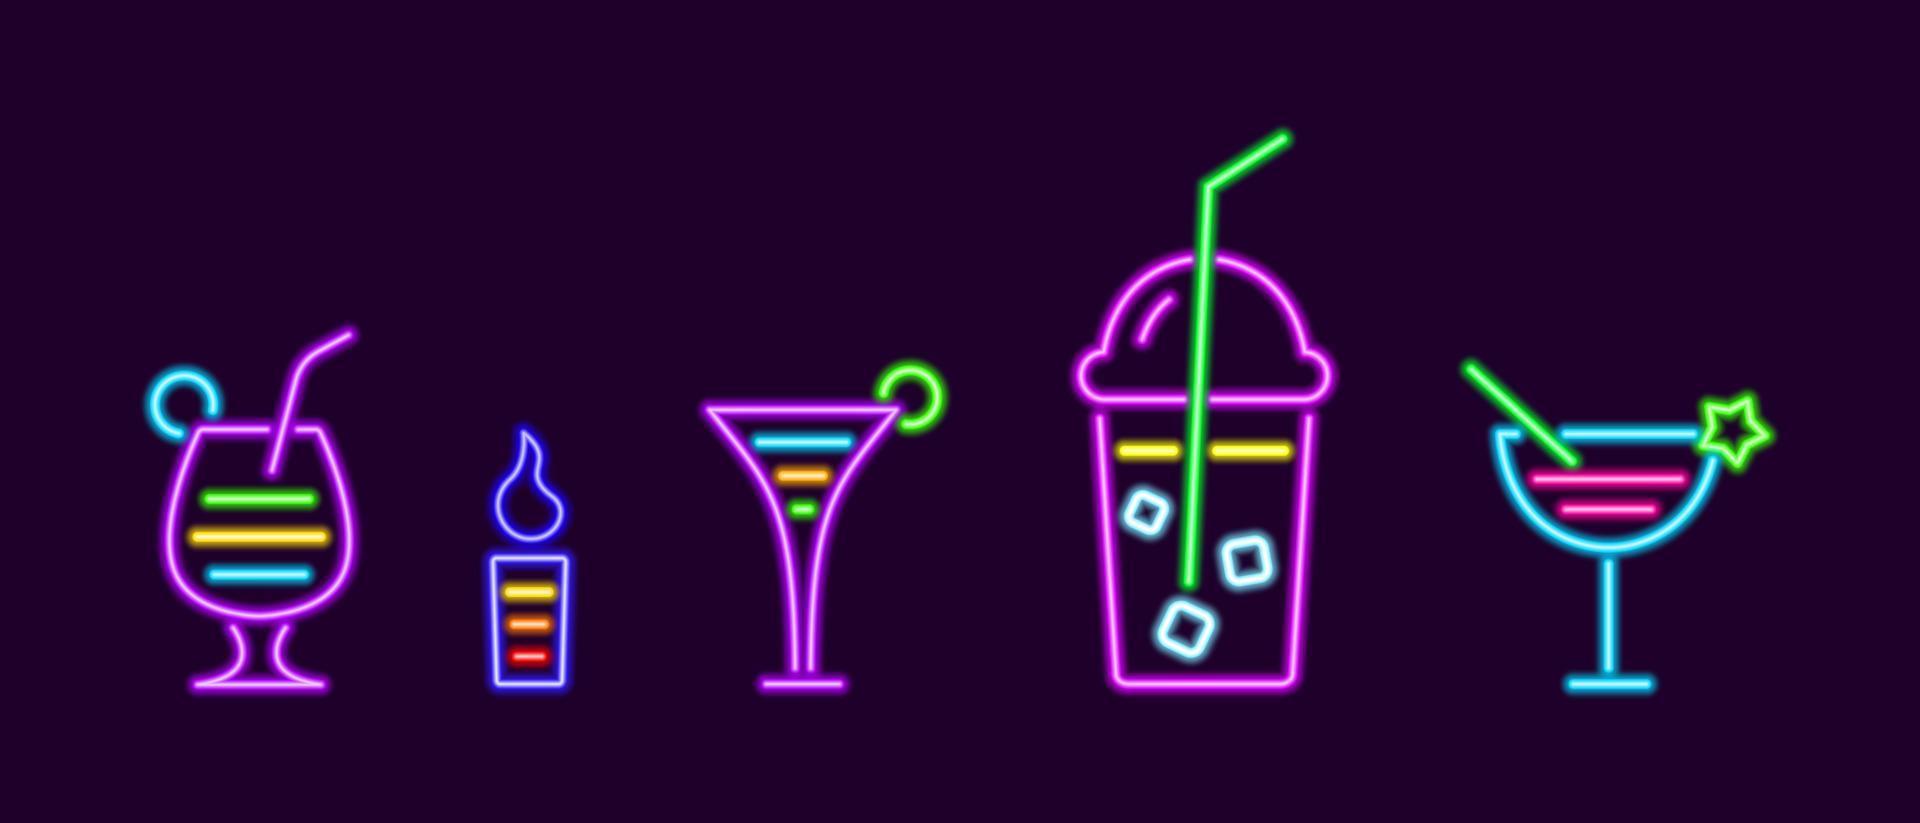 cocktails linéaires et boissons au néon. verre avec limonade et glaçons teinture flamboyante à la crème irlandaise avec mousse figurée dans une tasse en verre. pina colada violet avec coin de vecteur d'ananas